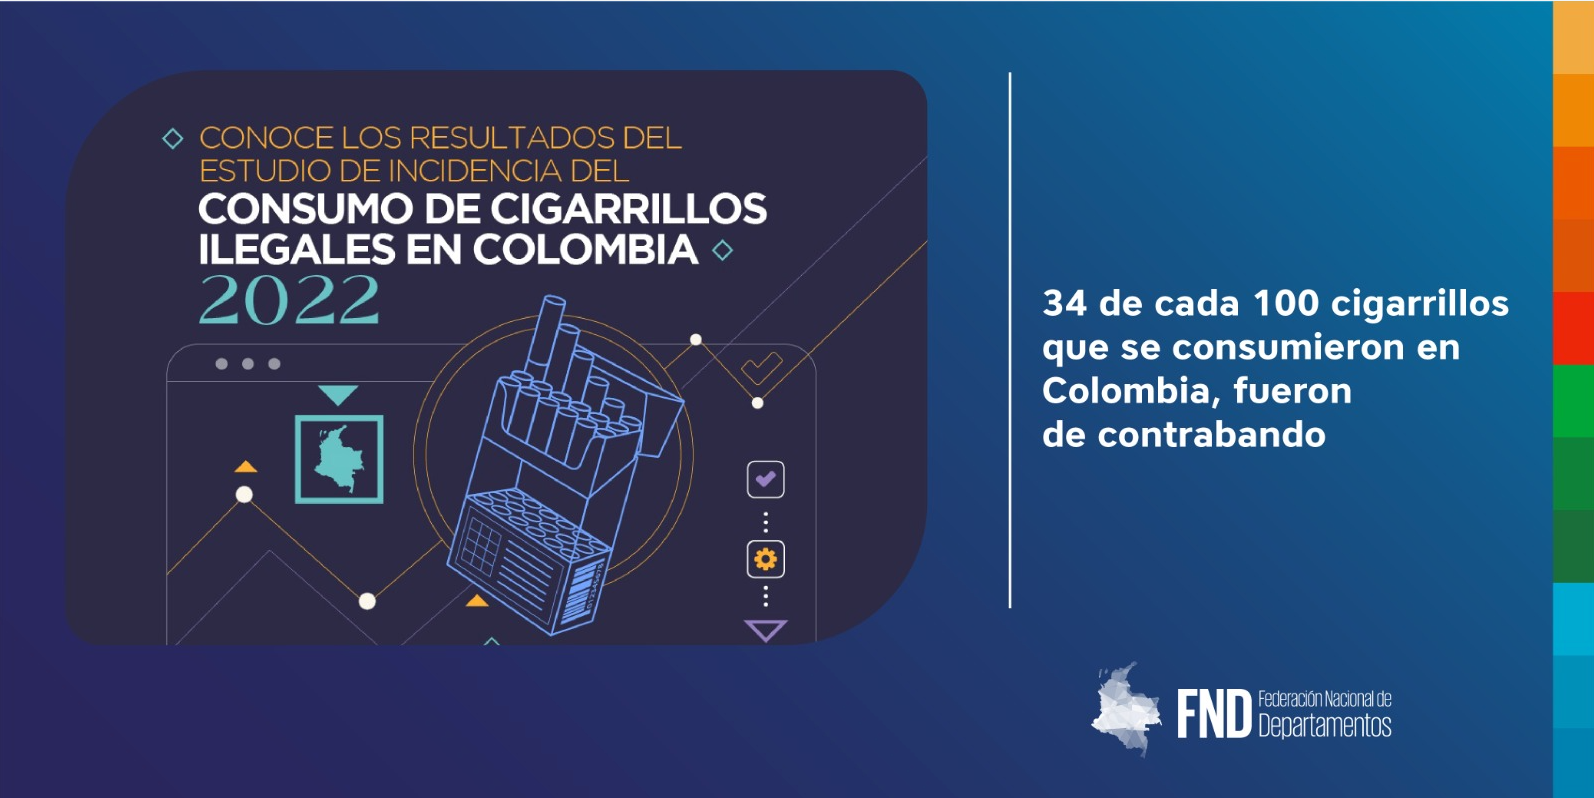 image 34 de cada 100 cigarrillos que se consumieron en Colombia, fueron de contrabando